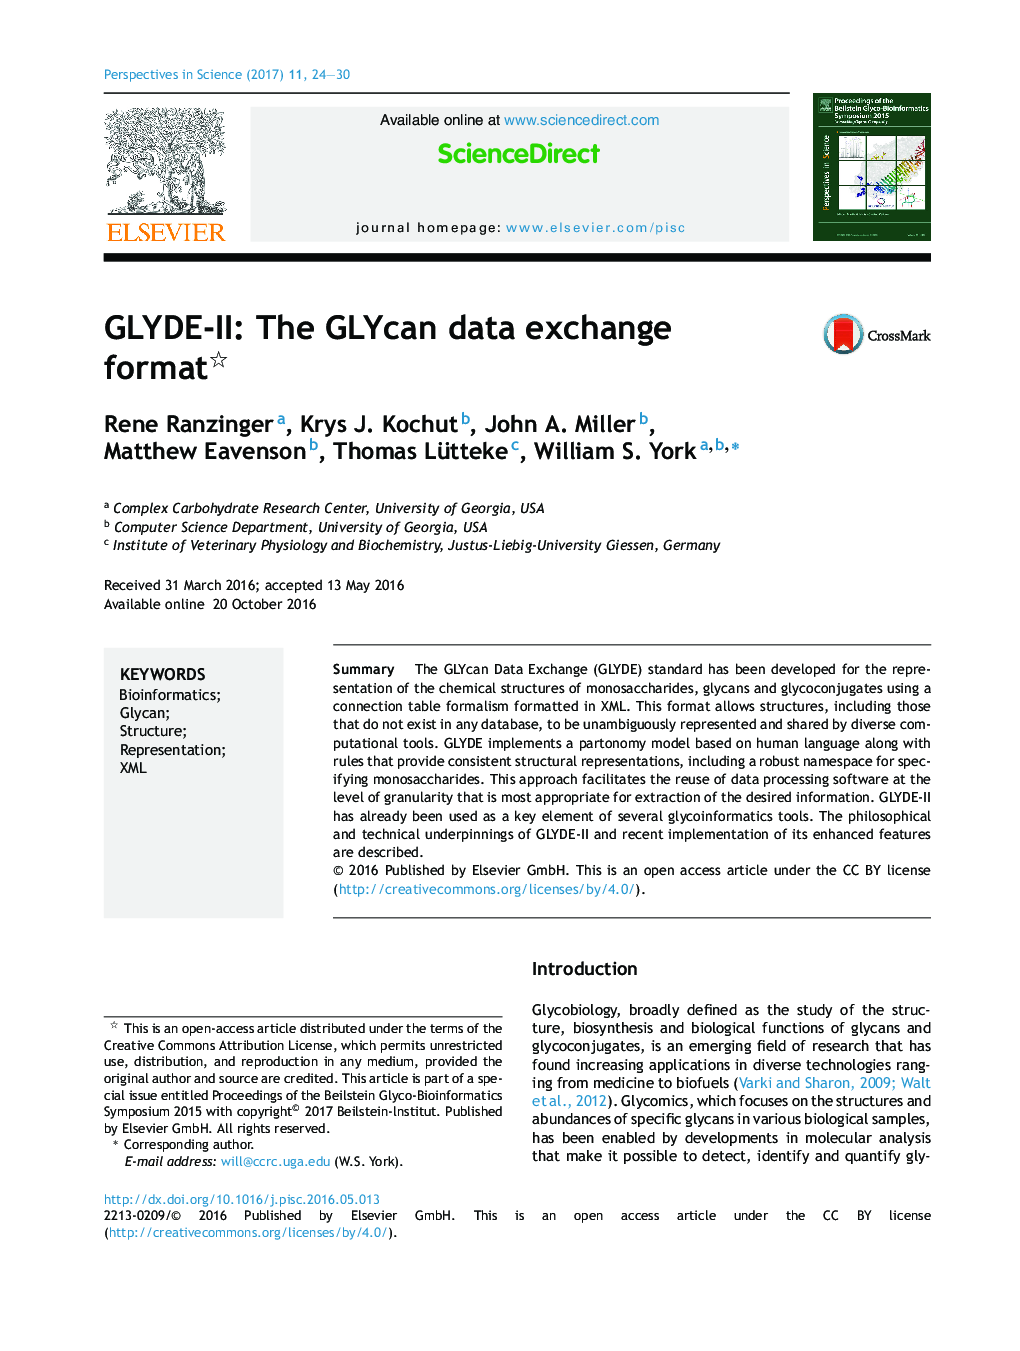 GLYDE-II: The GLYcan data exchange format